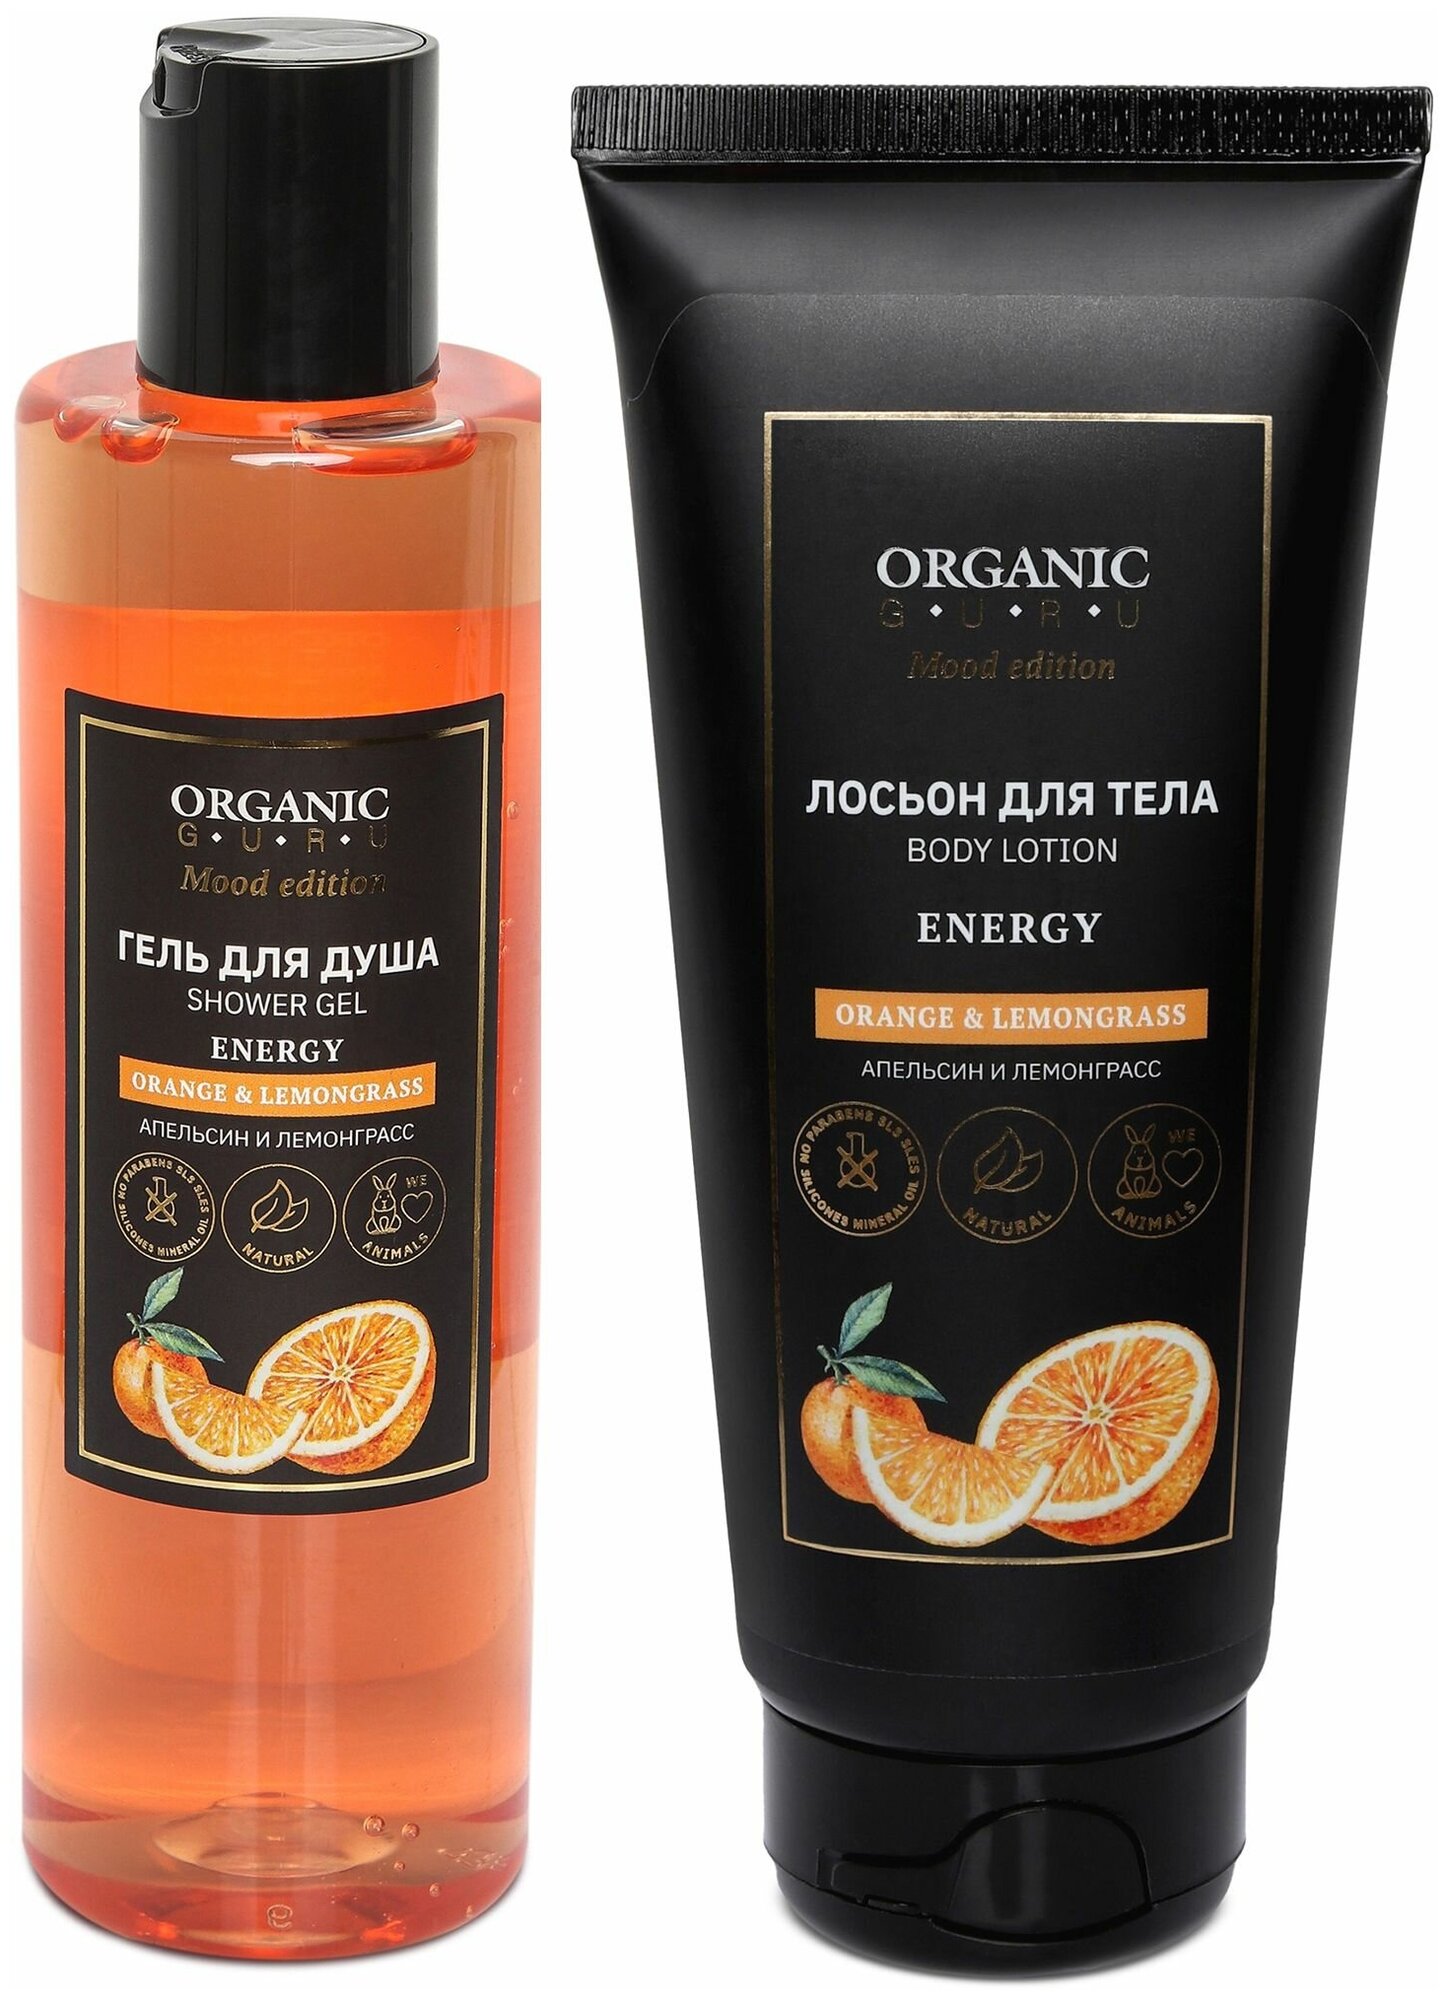 ORGANIC GURU "Апельсин" Гель для душа 250 ml. + Лосьон для тела 200 ml. Органик Гуру Без SLS и парабенов, бессульфатный, органический.